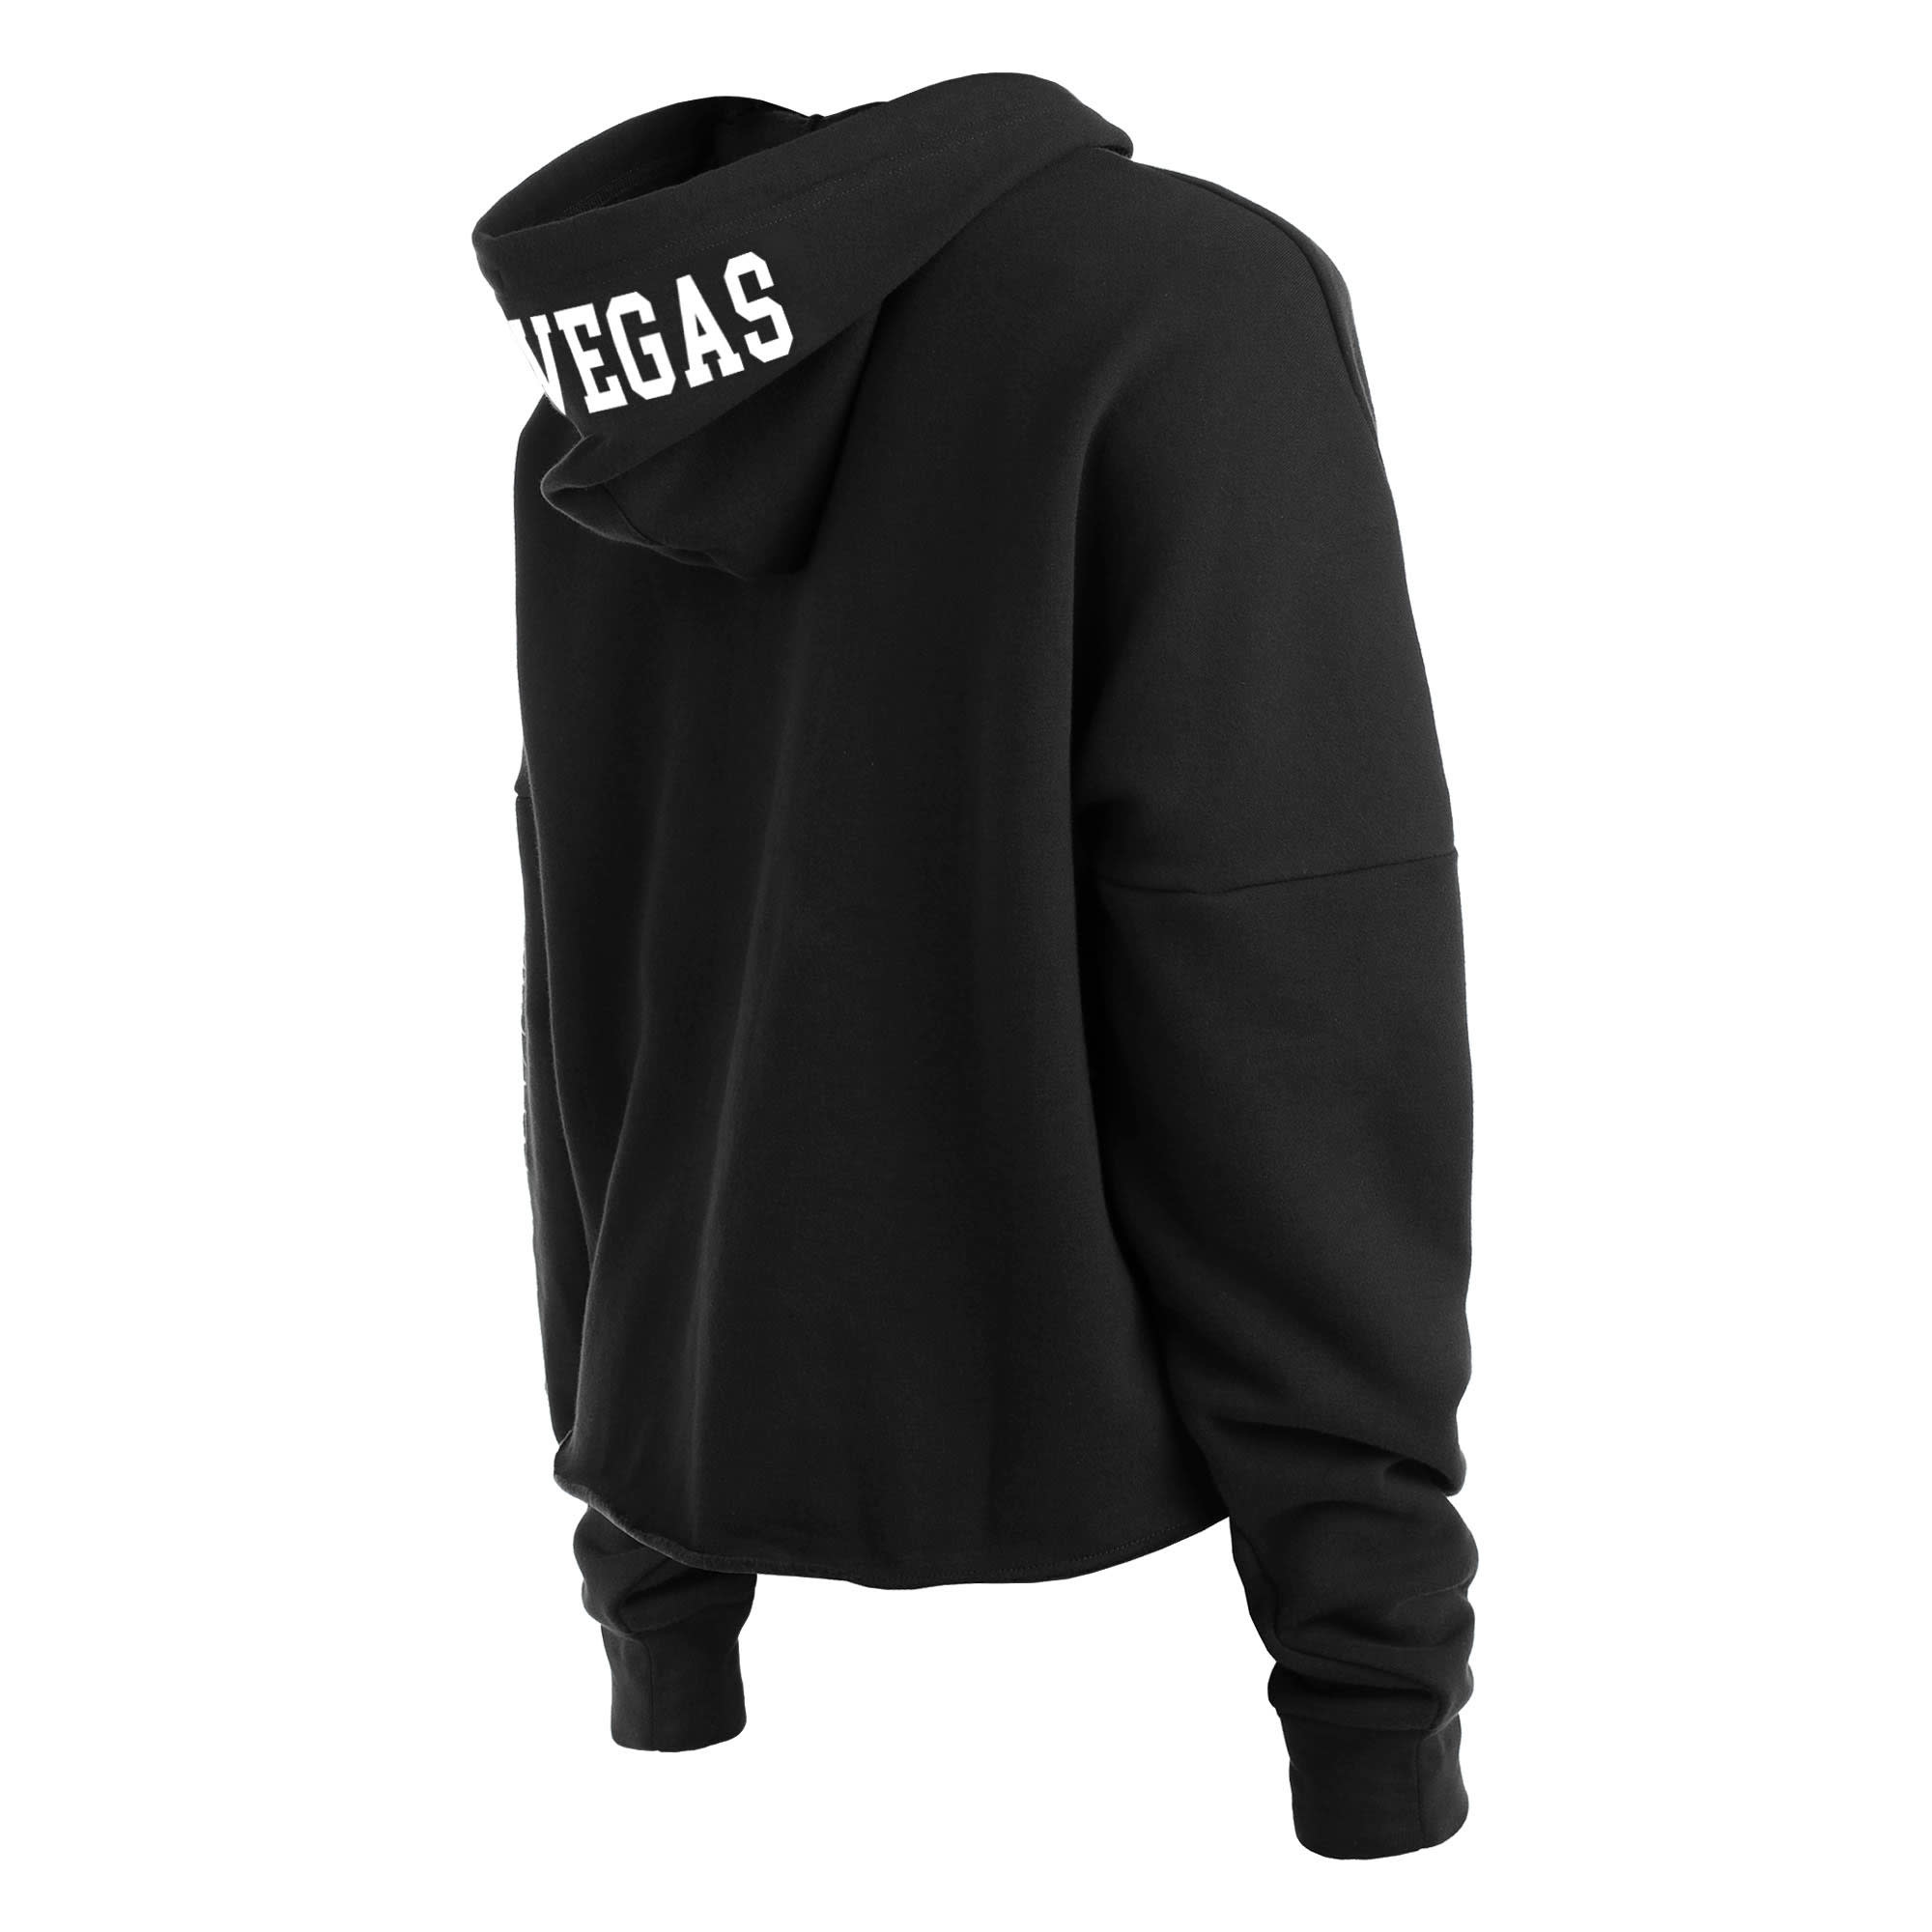 Las Vegas Raiders Women's Hooded Crop Sweatshirt - Black/White/Grey –  Refried Apparel